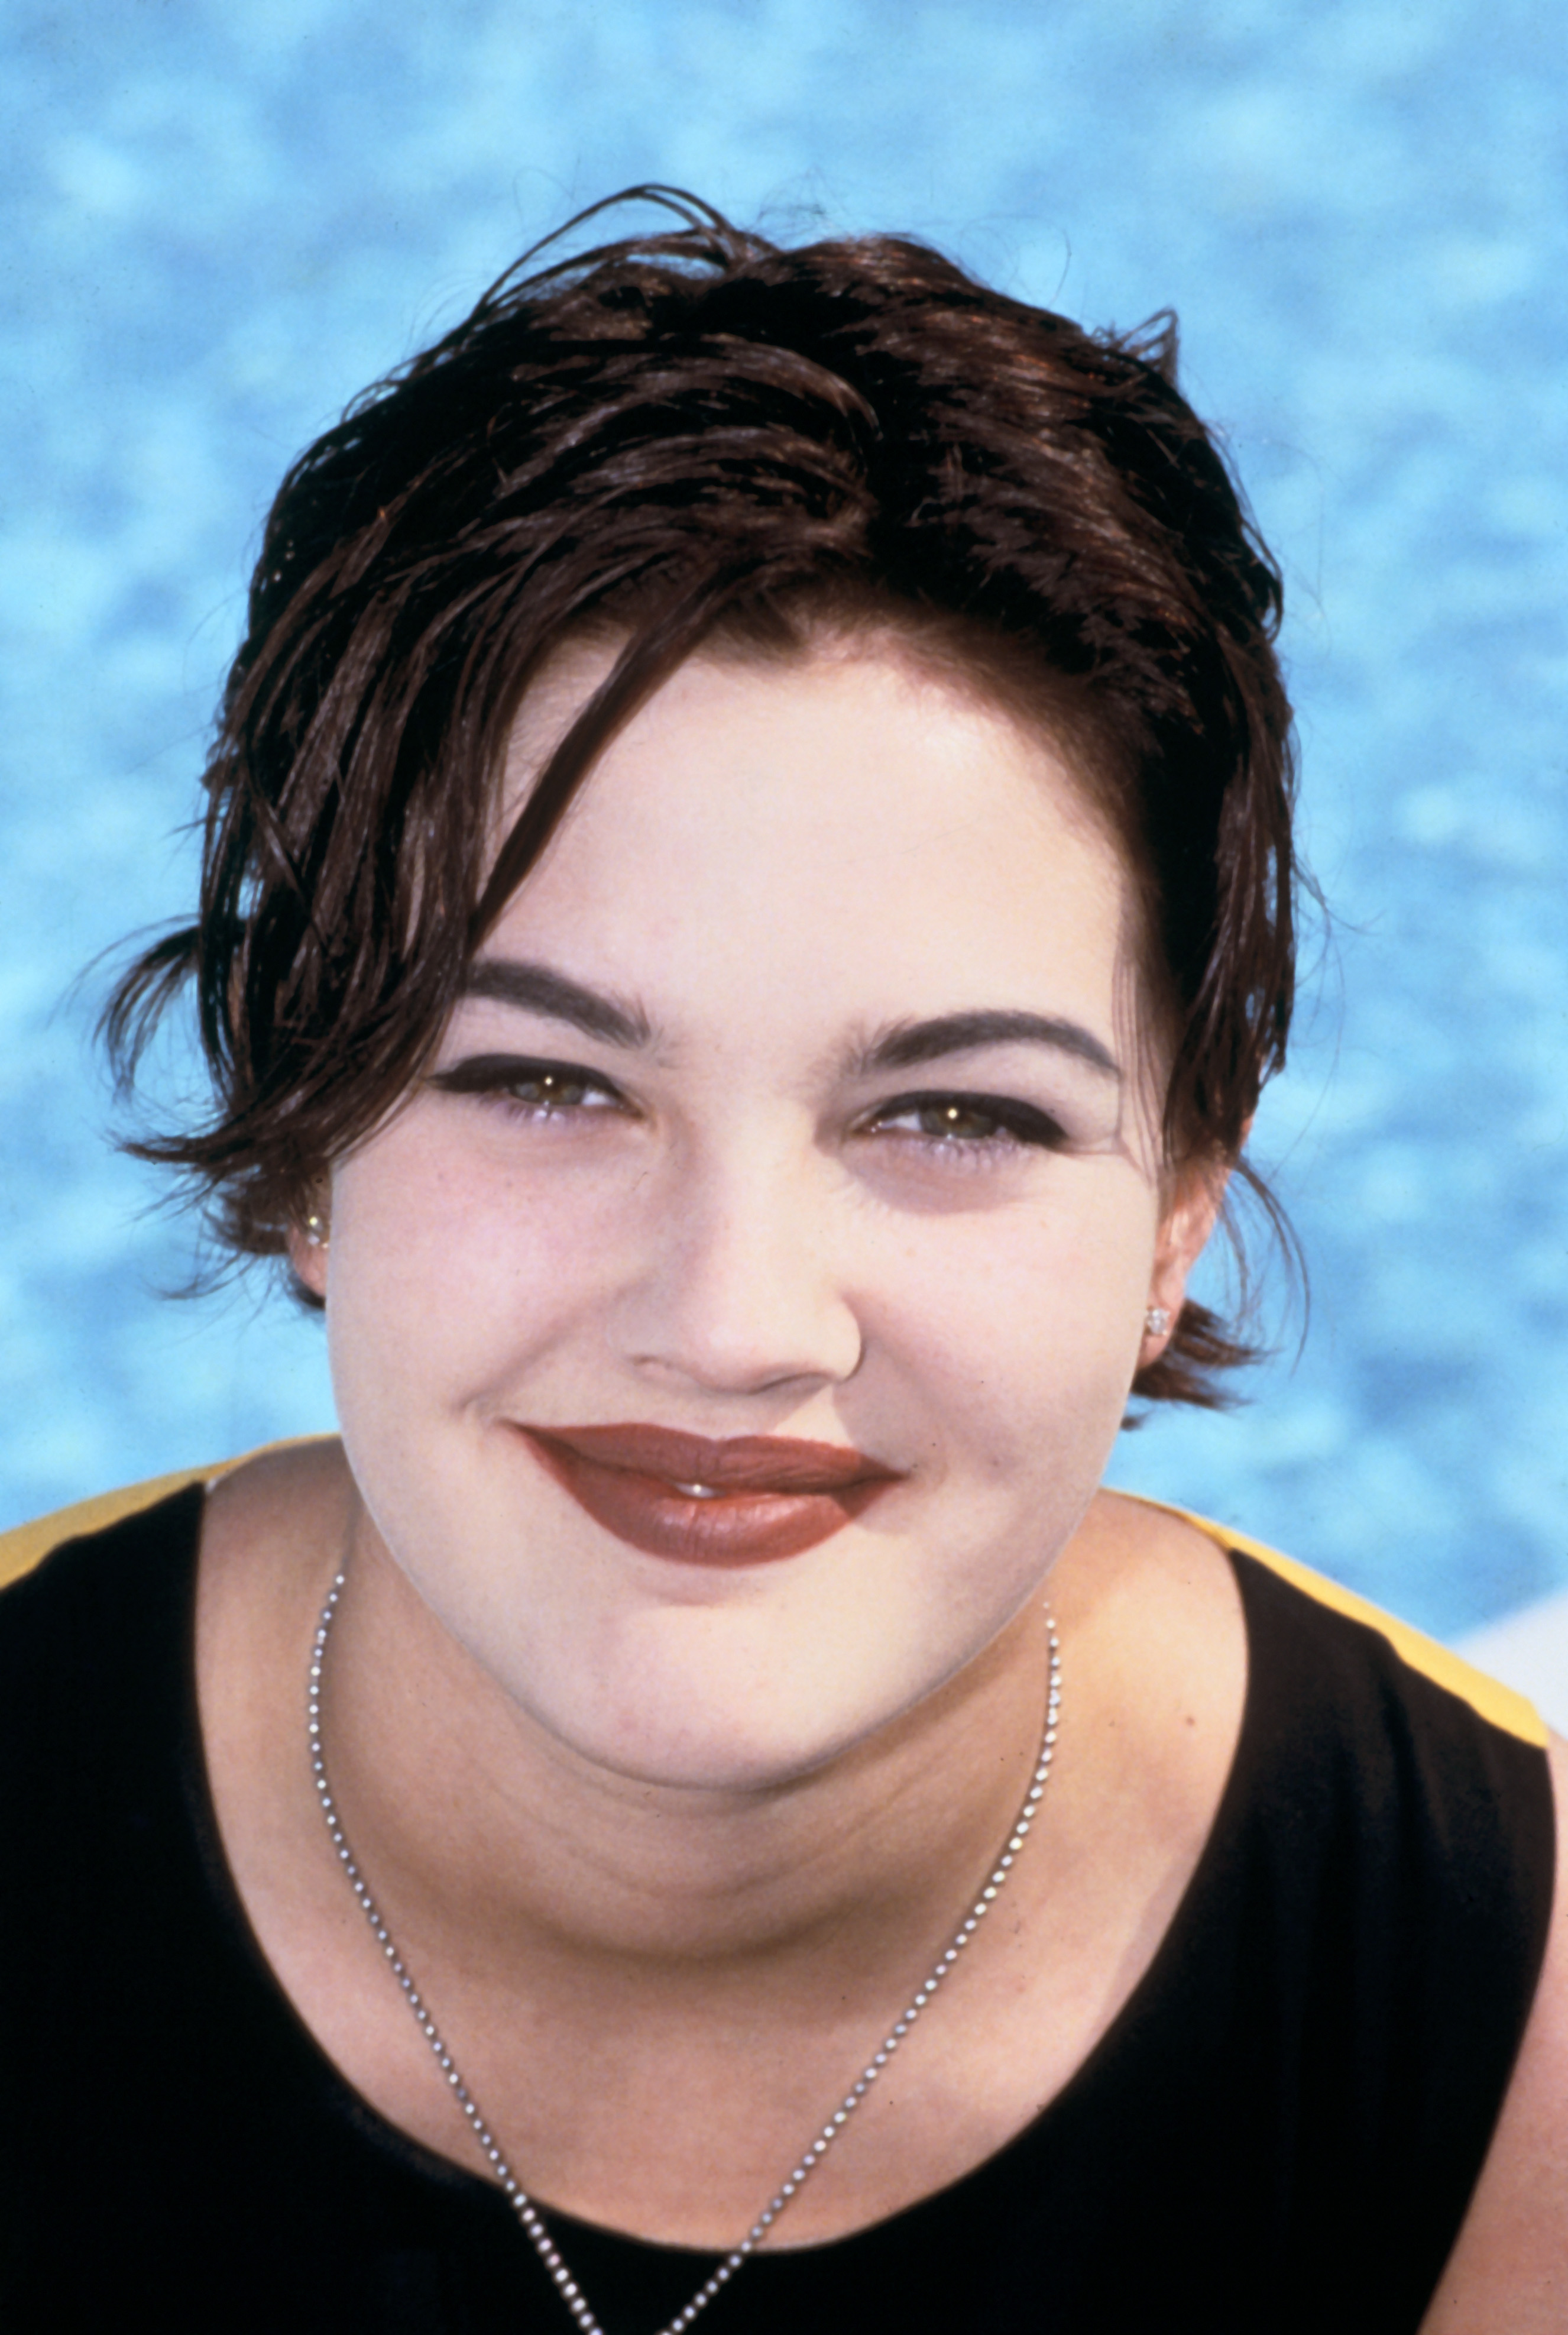 Drew Barrymore photographiée le 1er janvier 1990 | Source : Getty Images